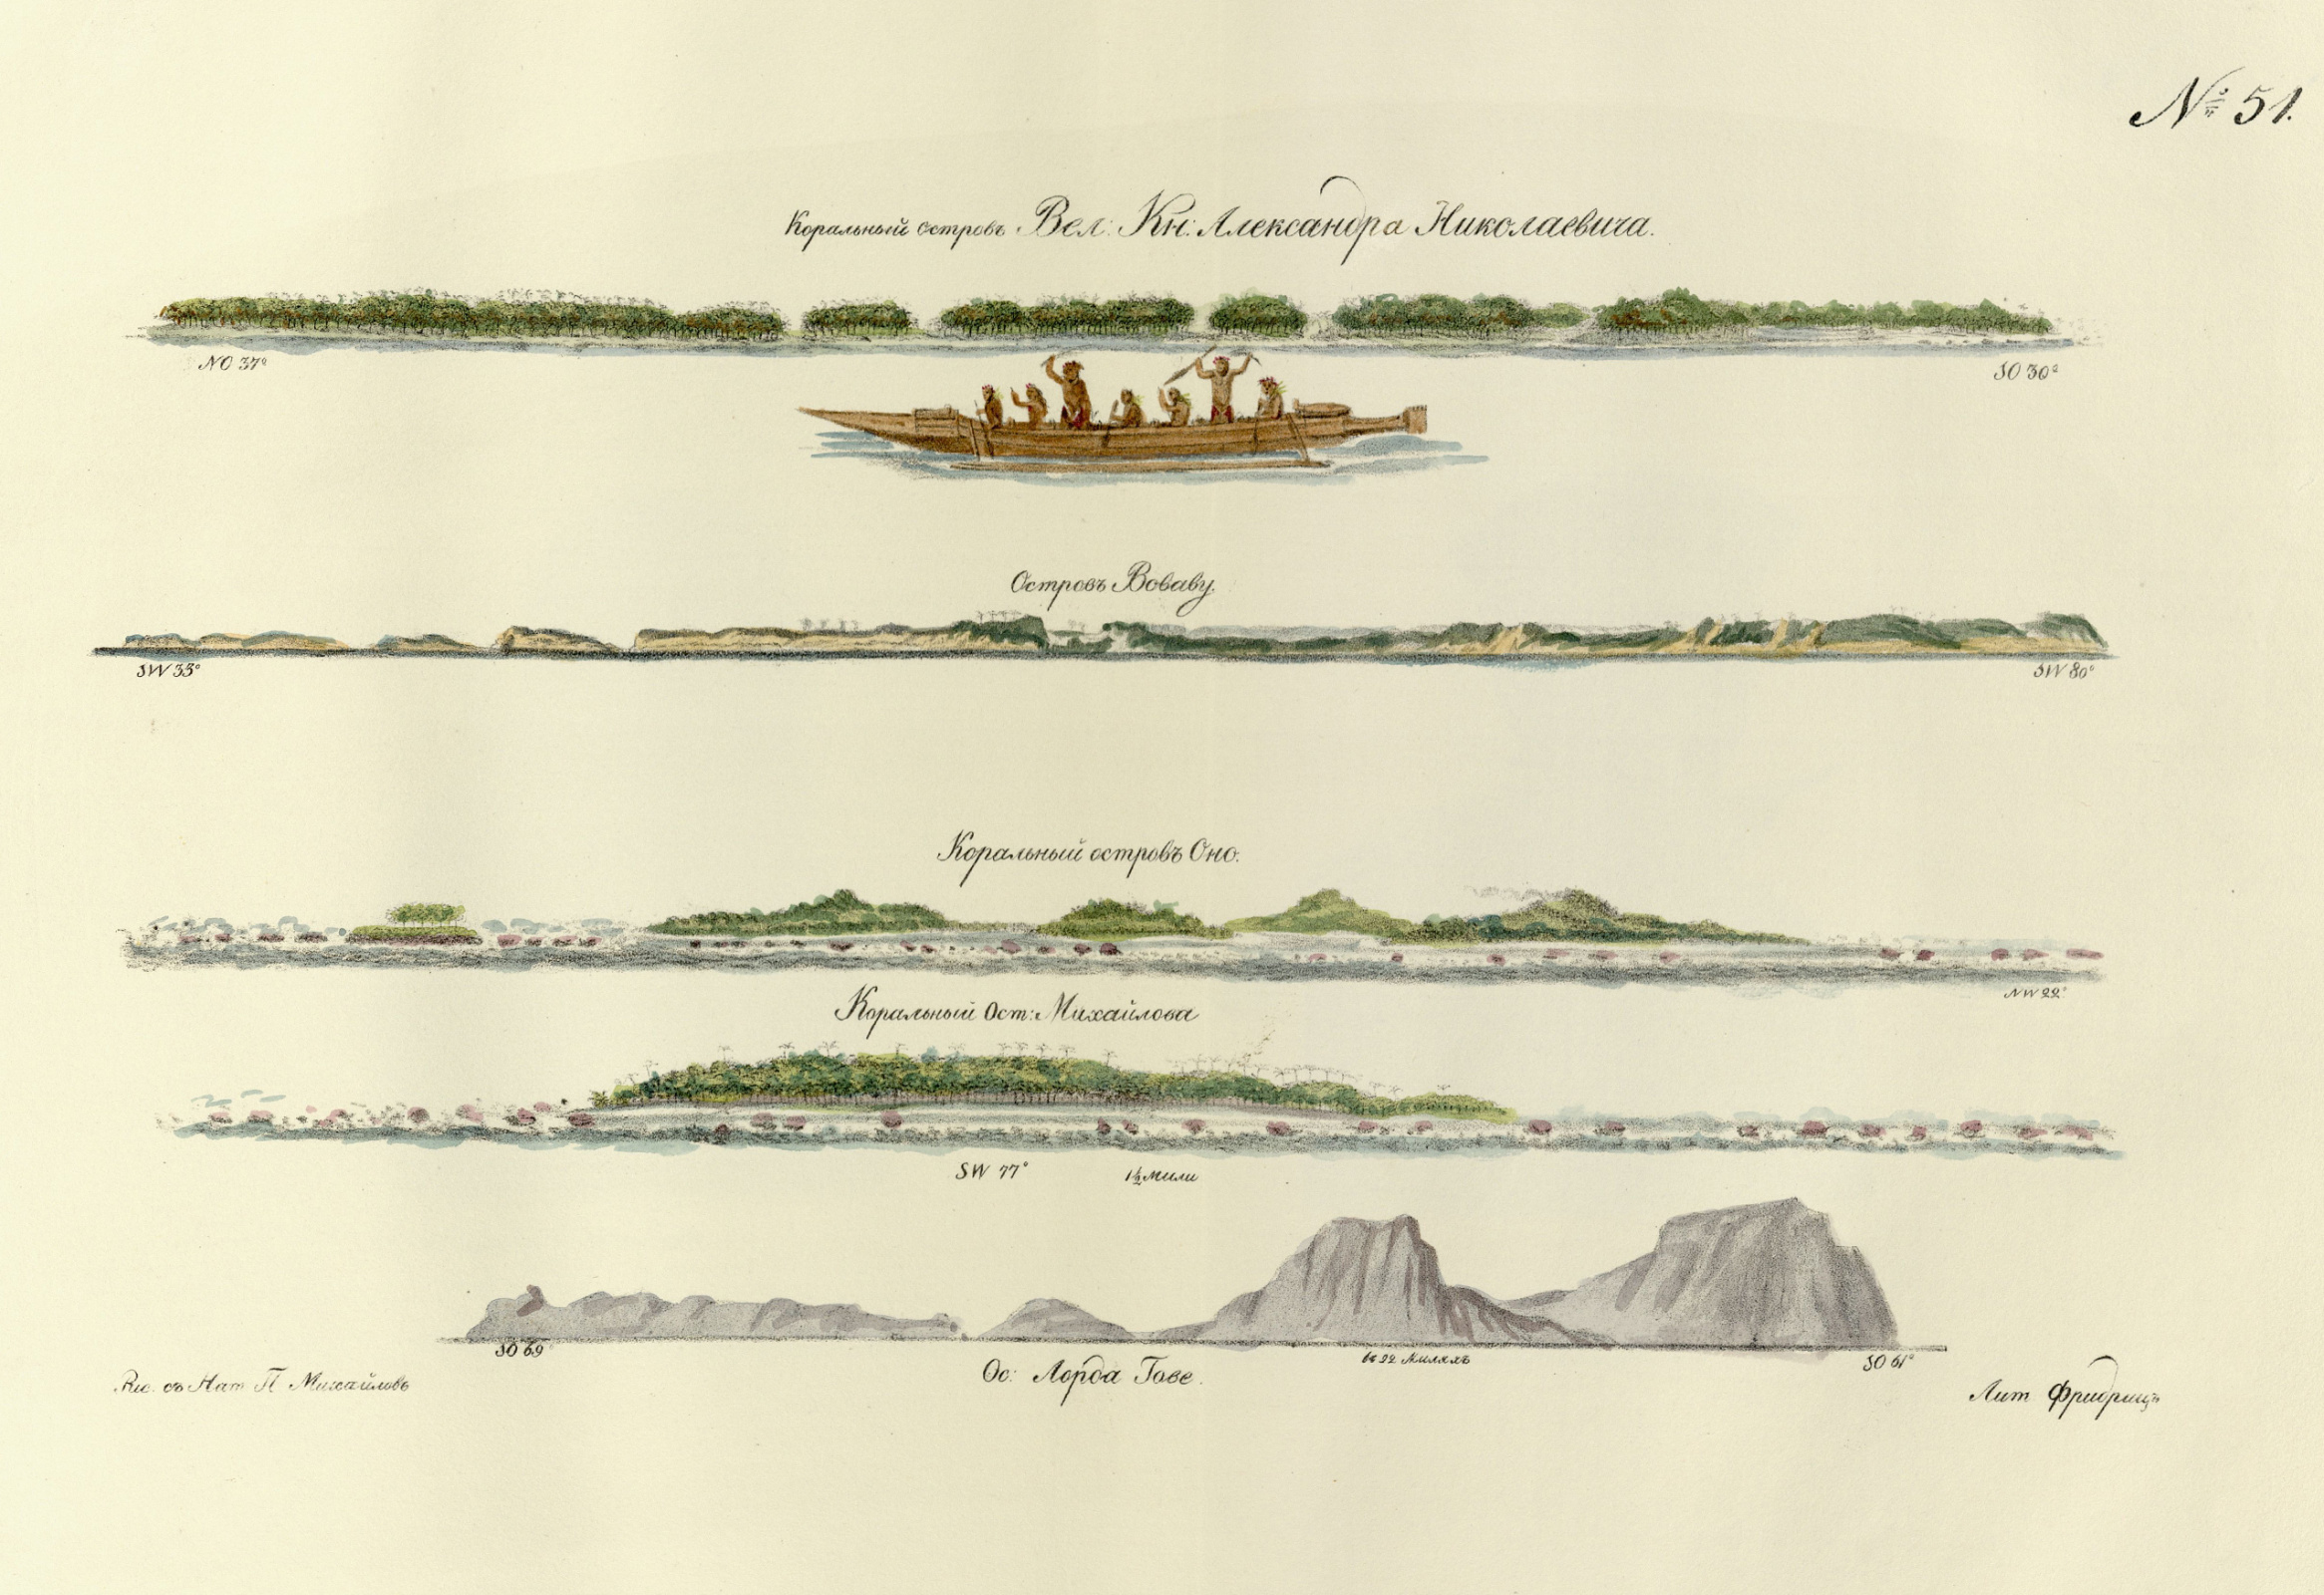 Остров своего имени Михайлов тоже зарисовал, как и многие другие / Из иллюстраций к Атласу Беллинсгаузена